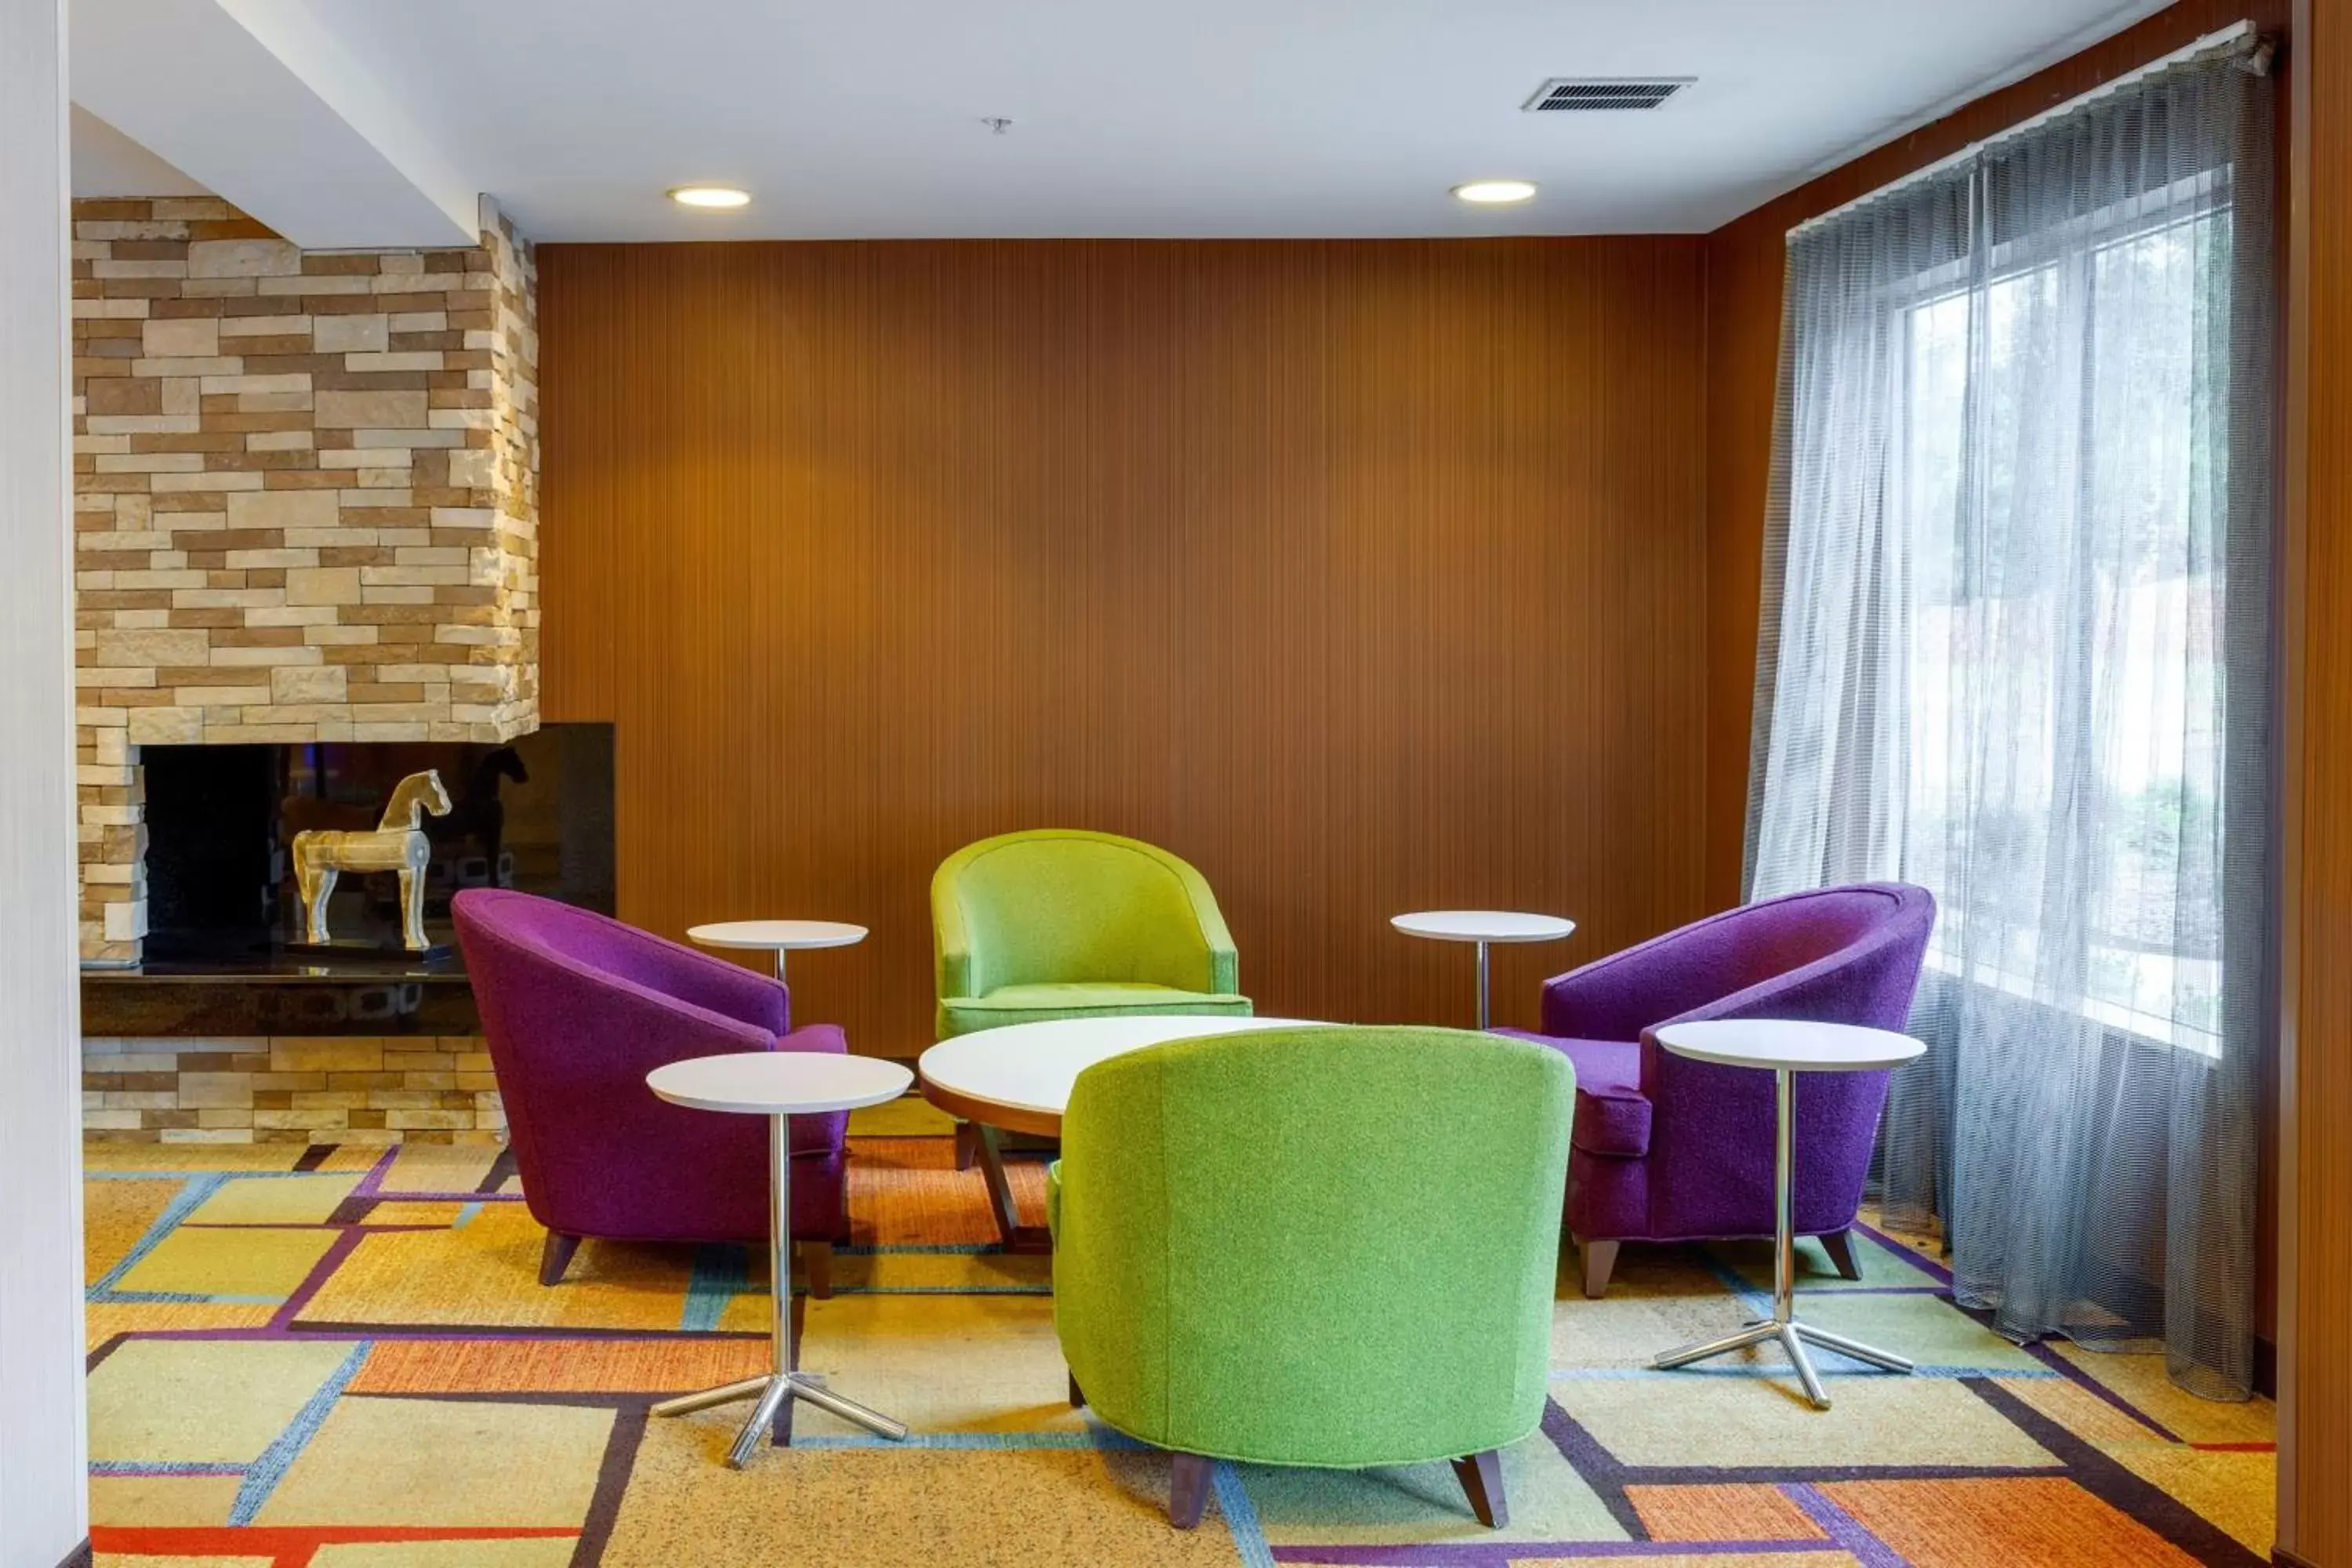 Lobby or reception in Fairfield Inn & Suites by Marriott Edmond